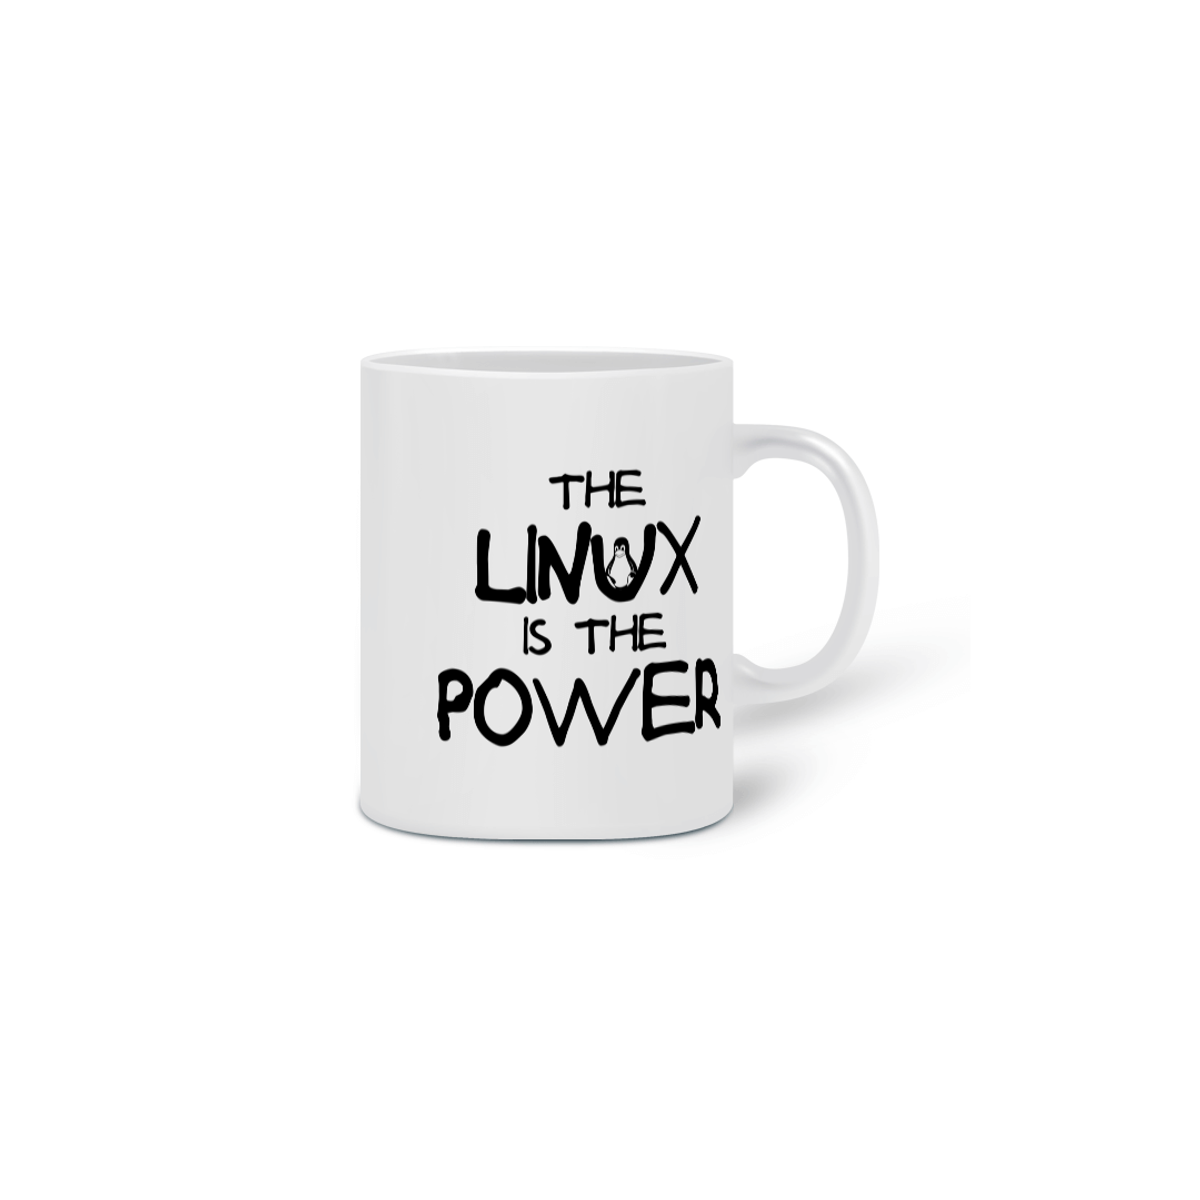 Nome do produto: THE LINUX IS THE POWER [1] [CANECA]